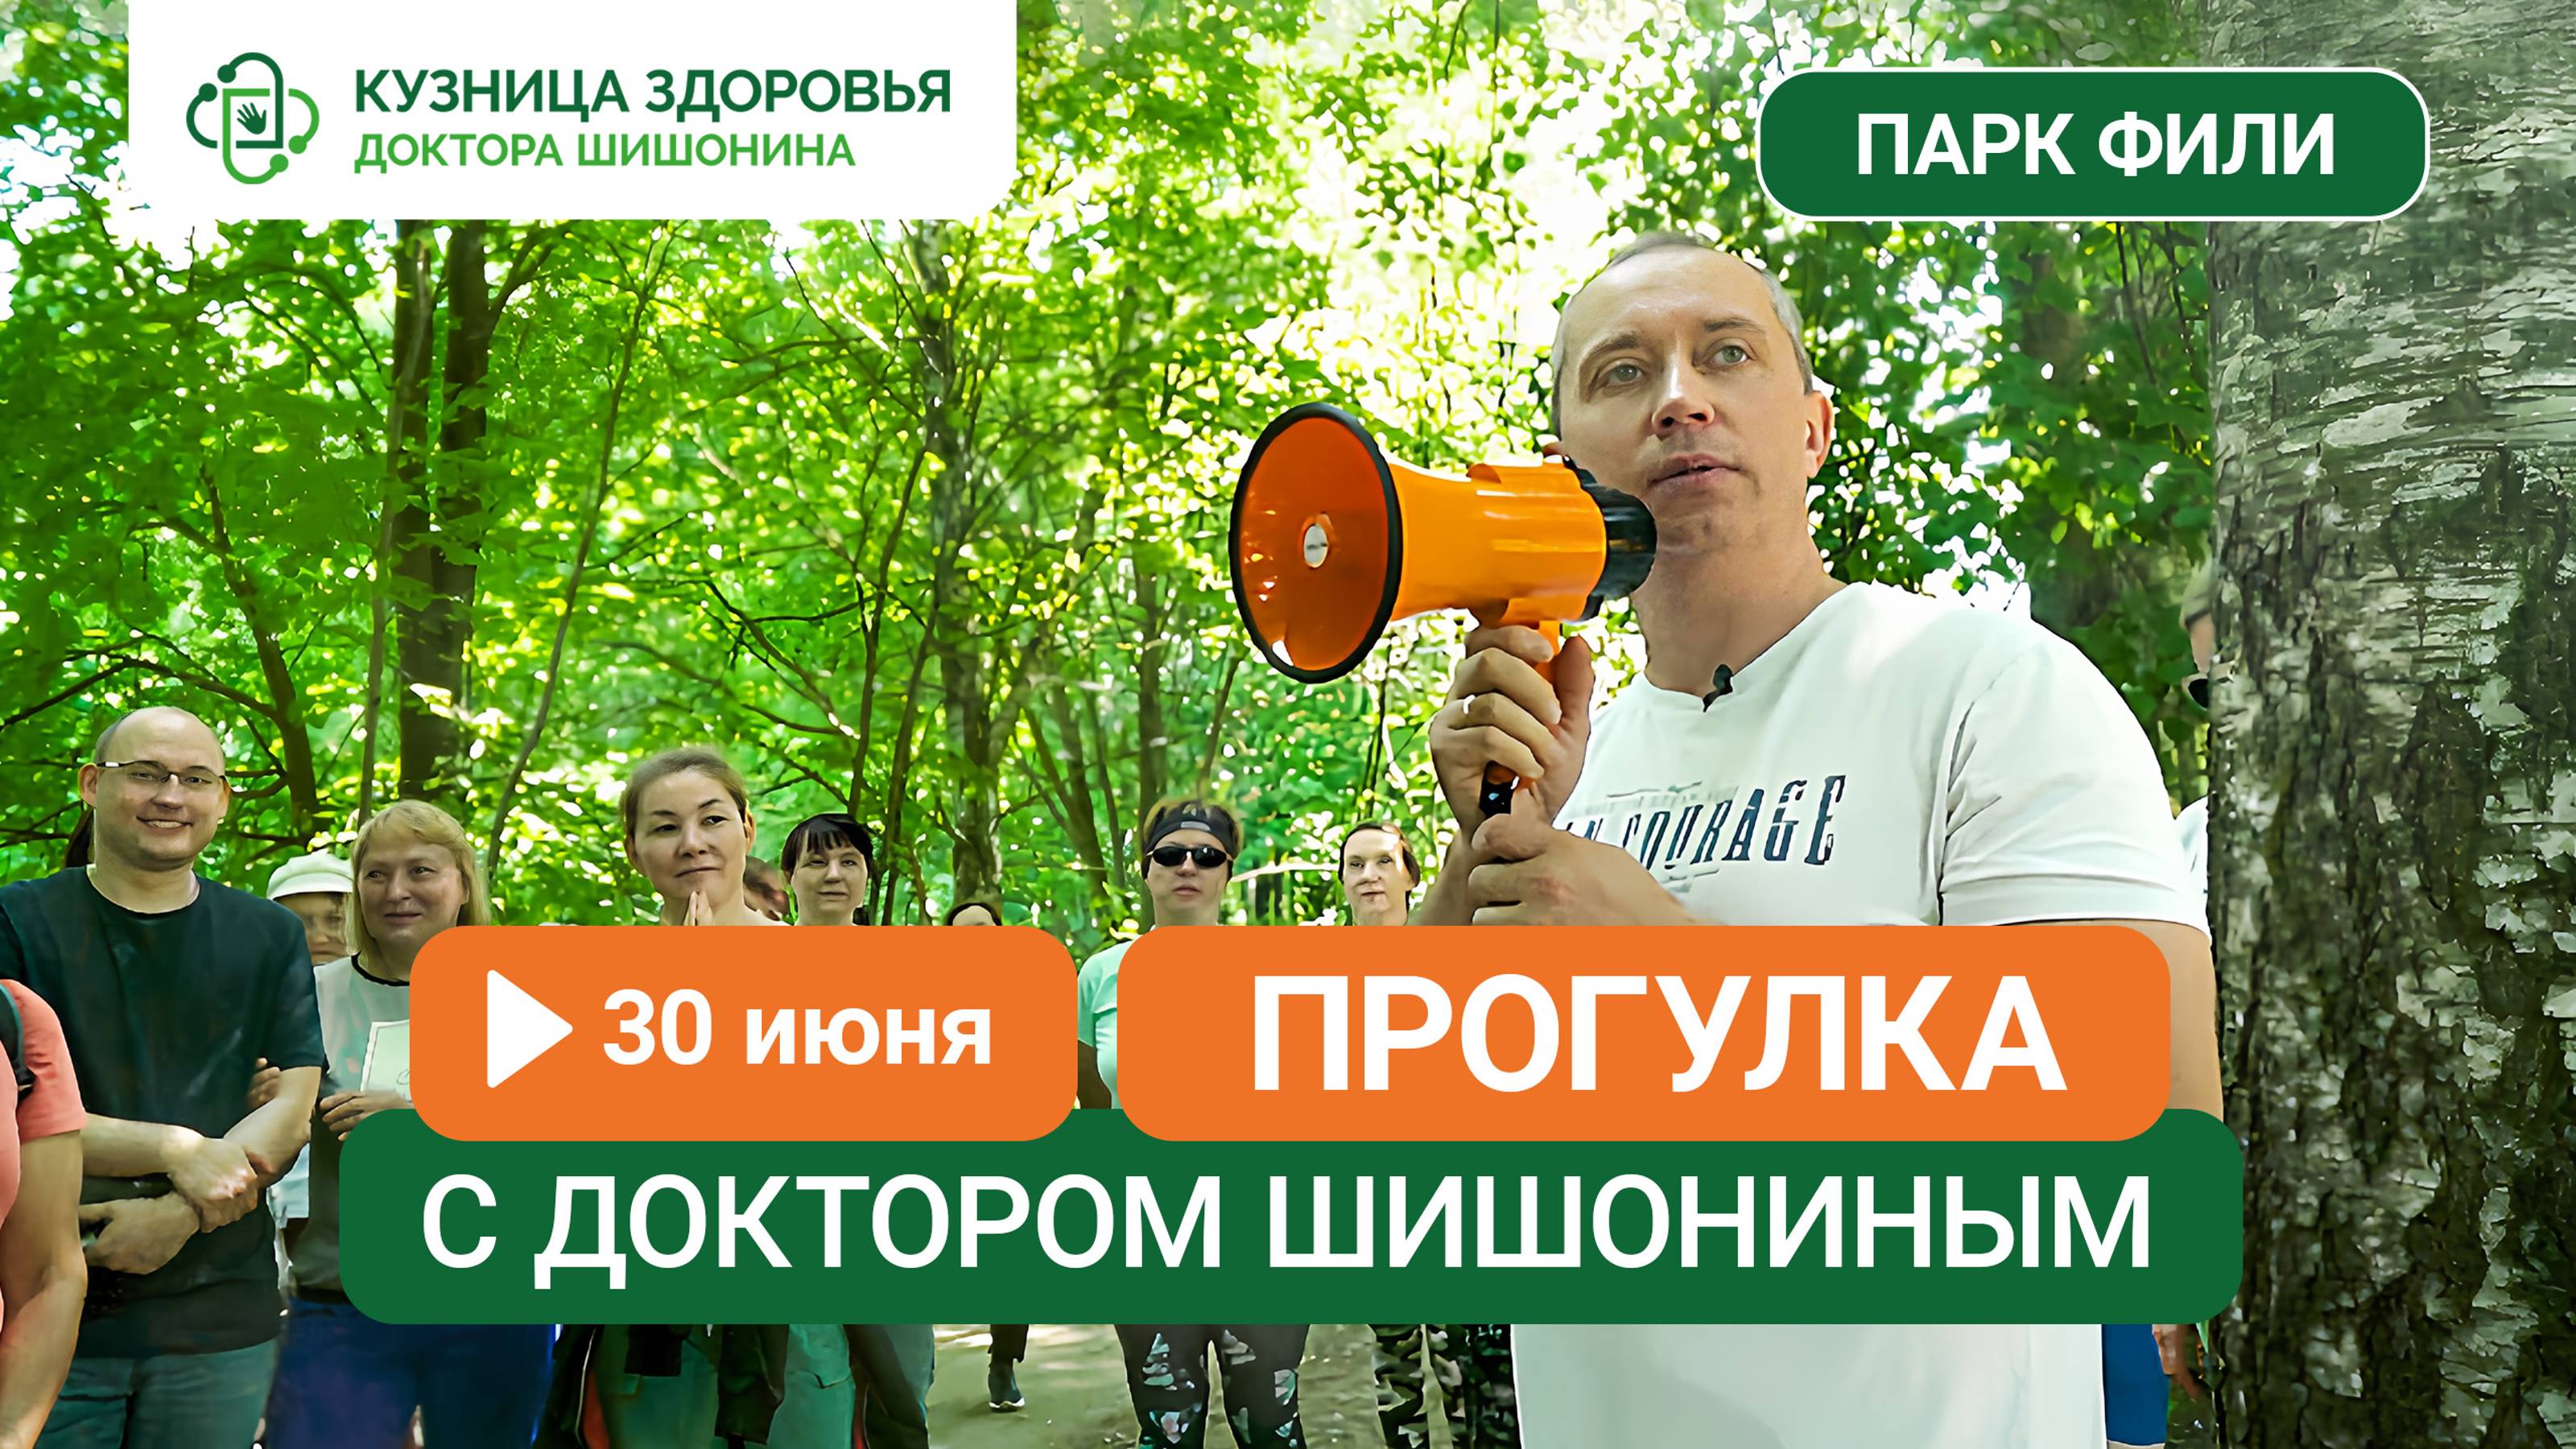 30 июня в парке Фили состоится прогулка с доктором Шишониным